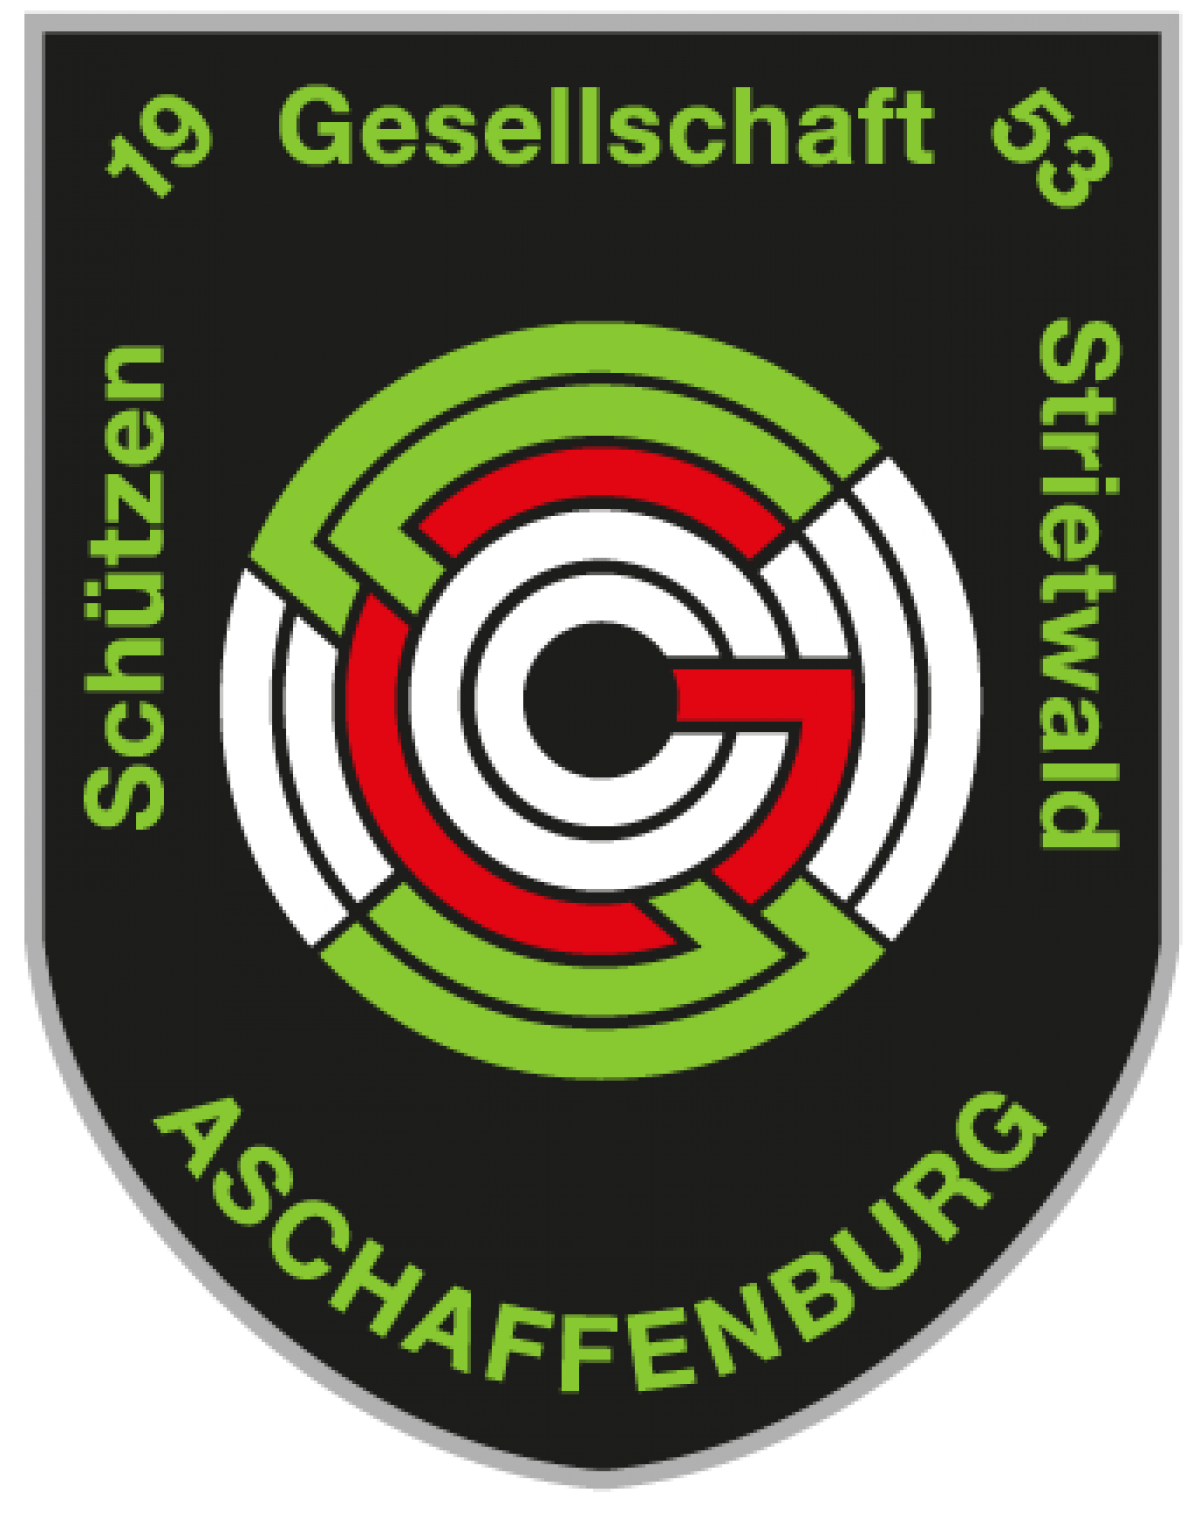 Schützengesellschaft Strietwald 1953 e.V.